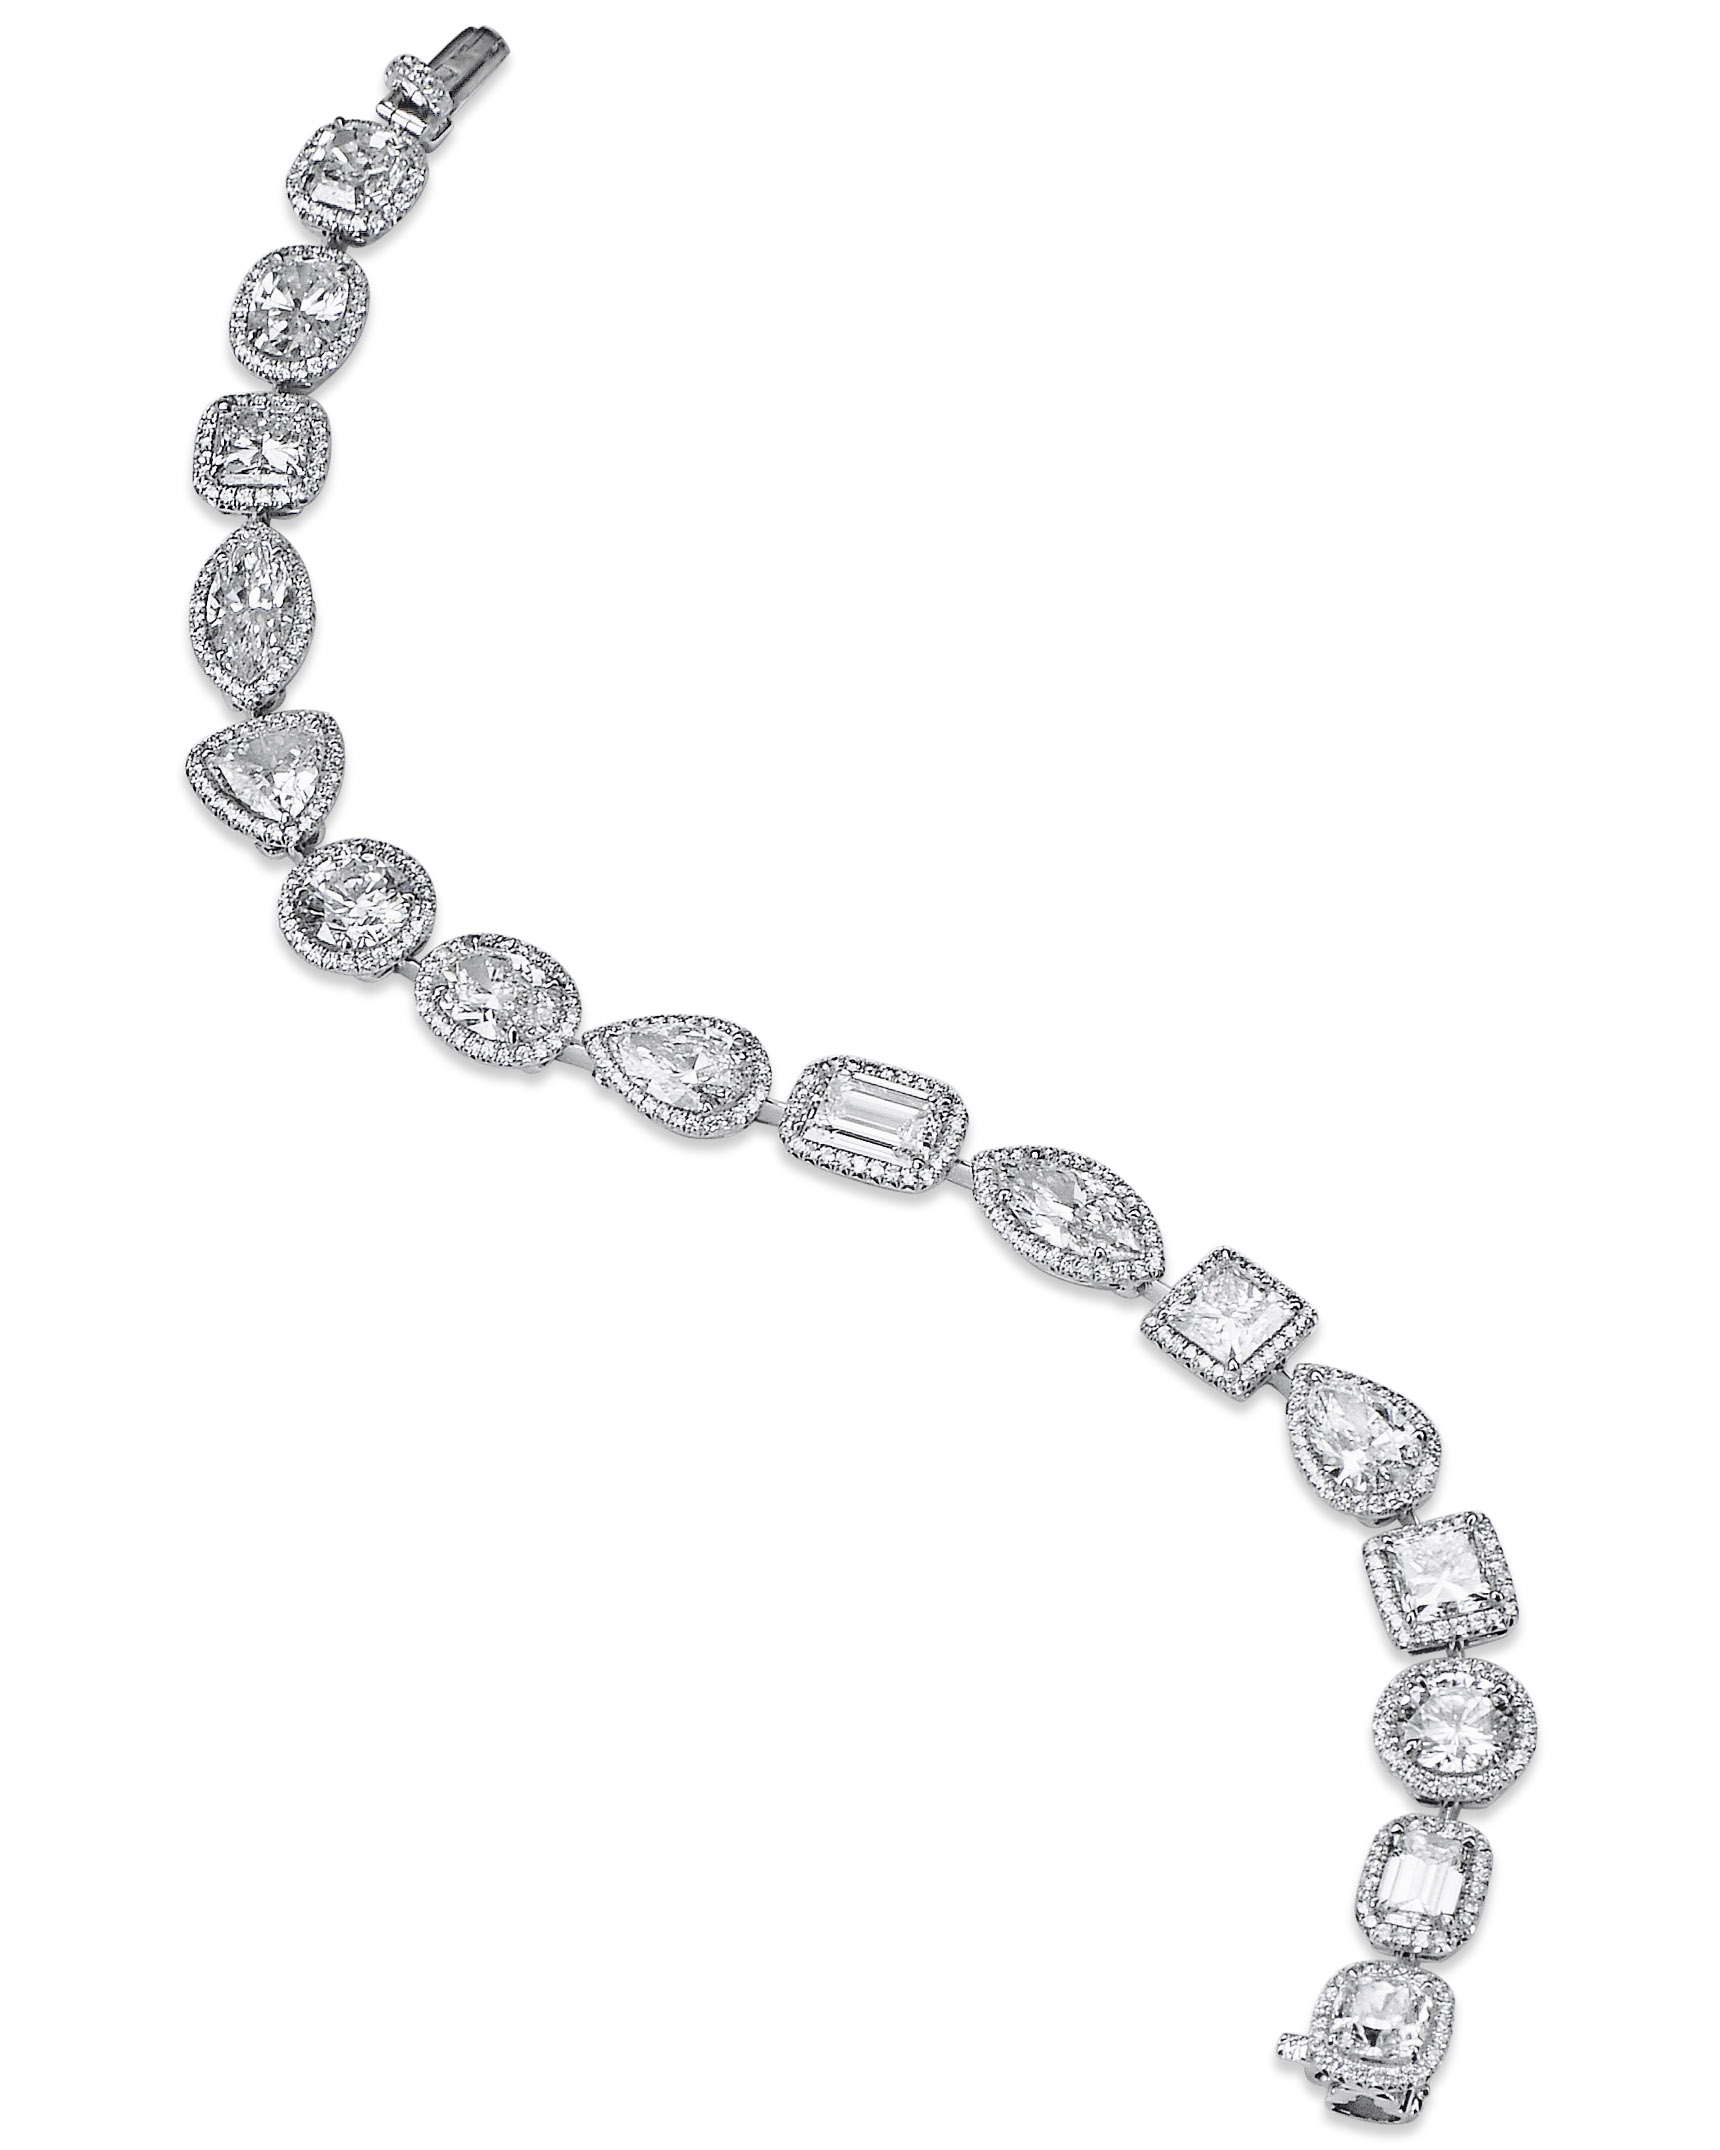 Fancy Shape Diamond Tennis Bracelet in White Gold - 6.43ctw